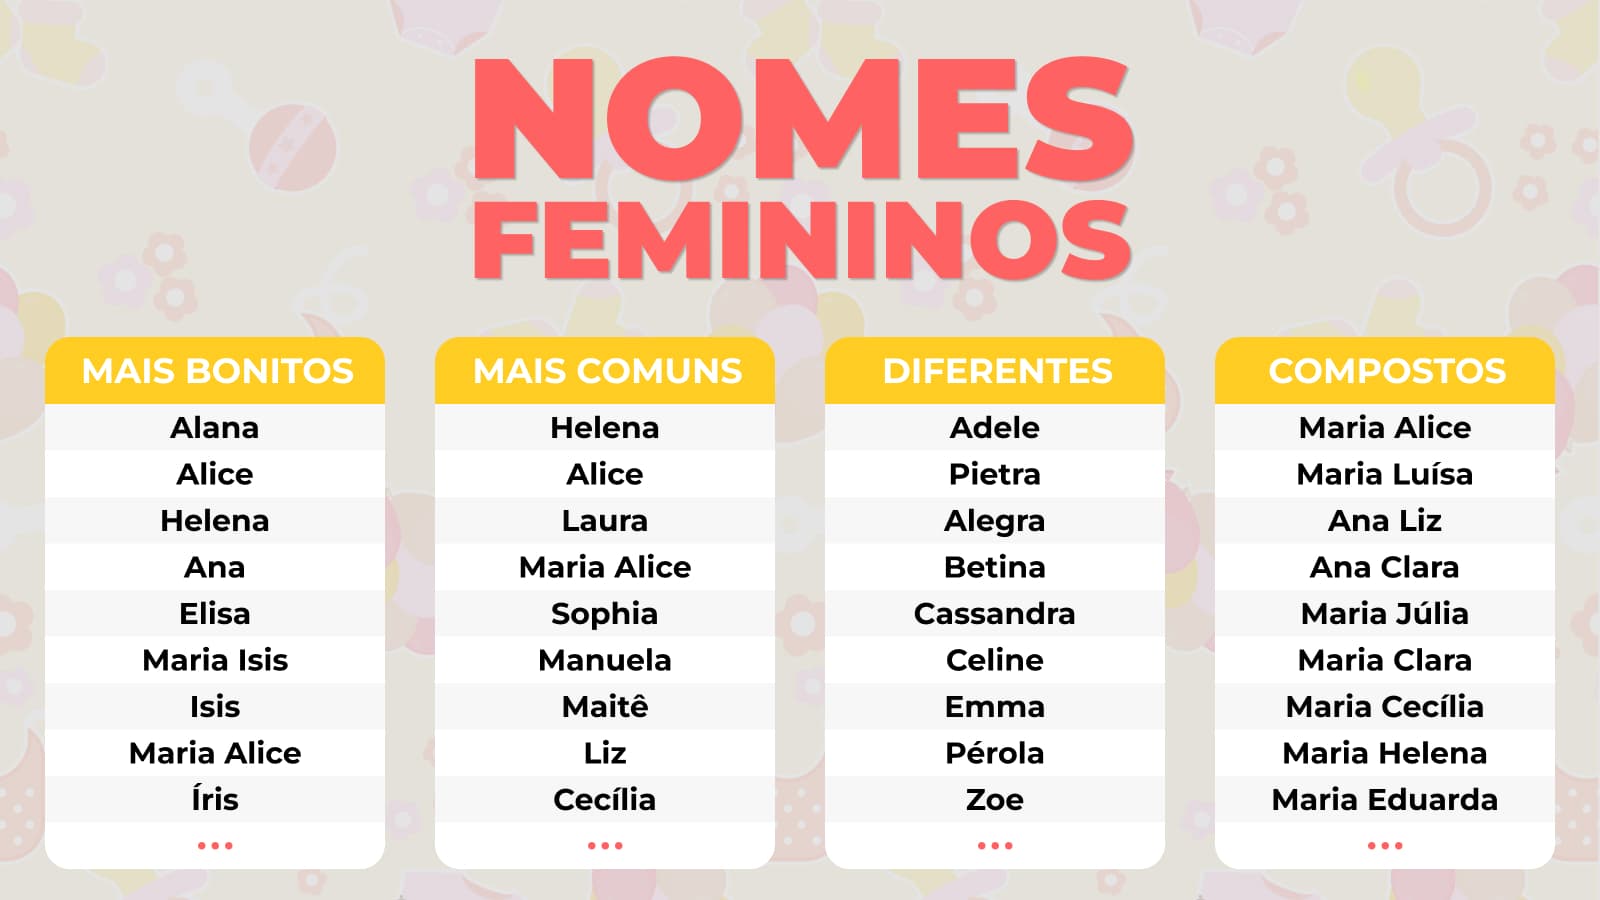 TOP 30 NOMES FEMININOS PARA COLOCAR NOS JOGOS 